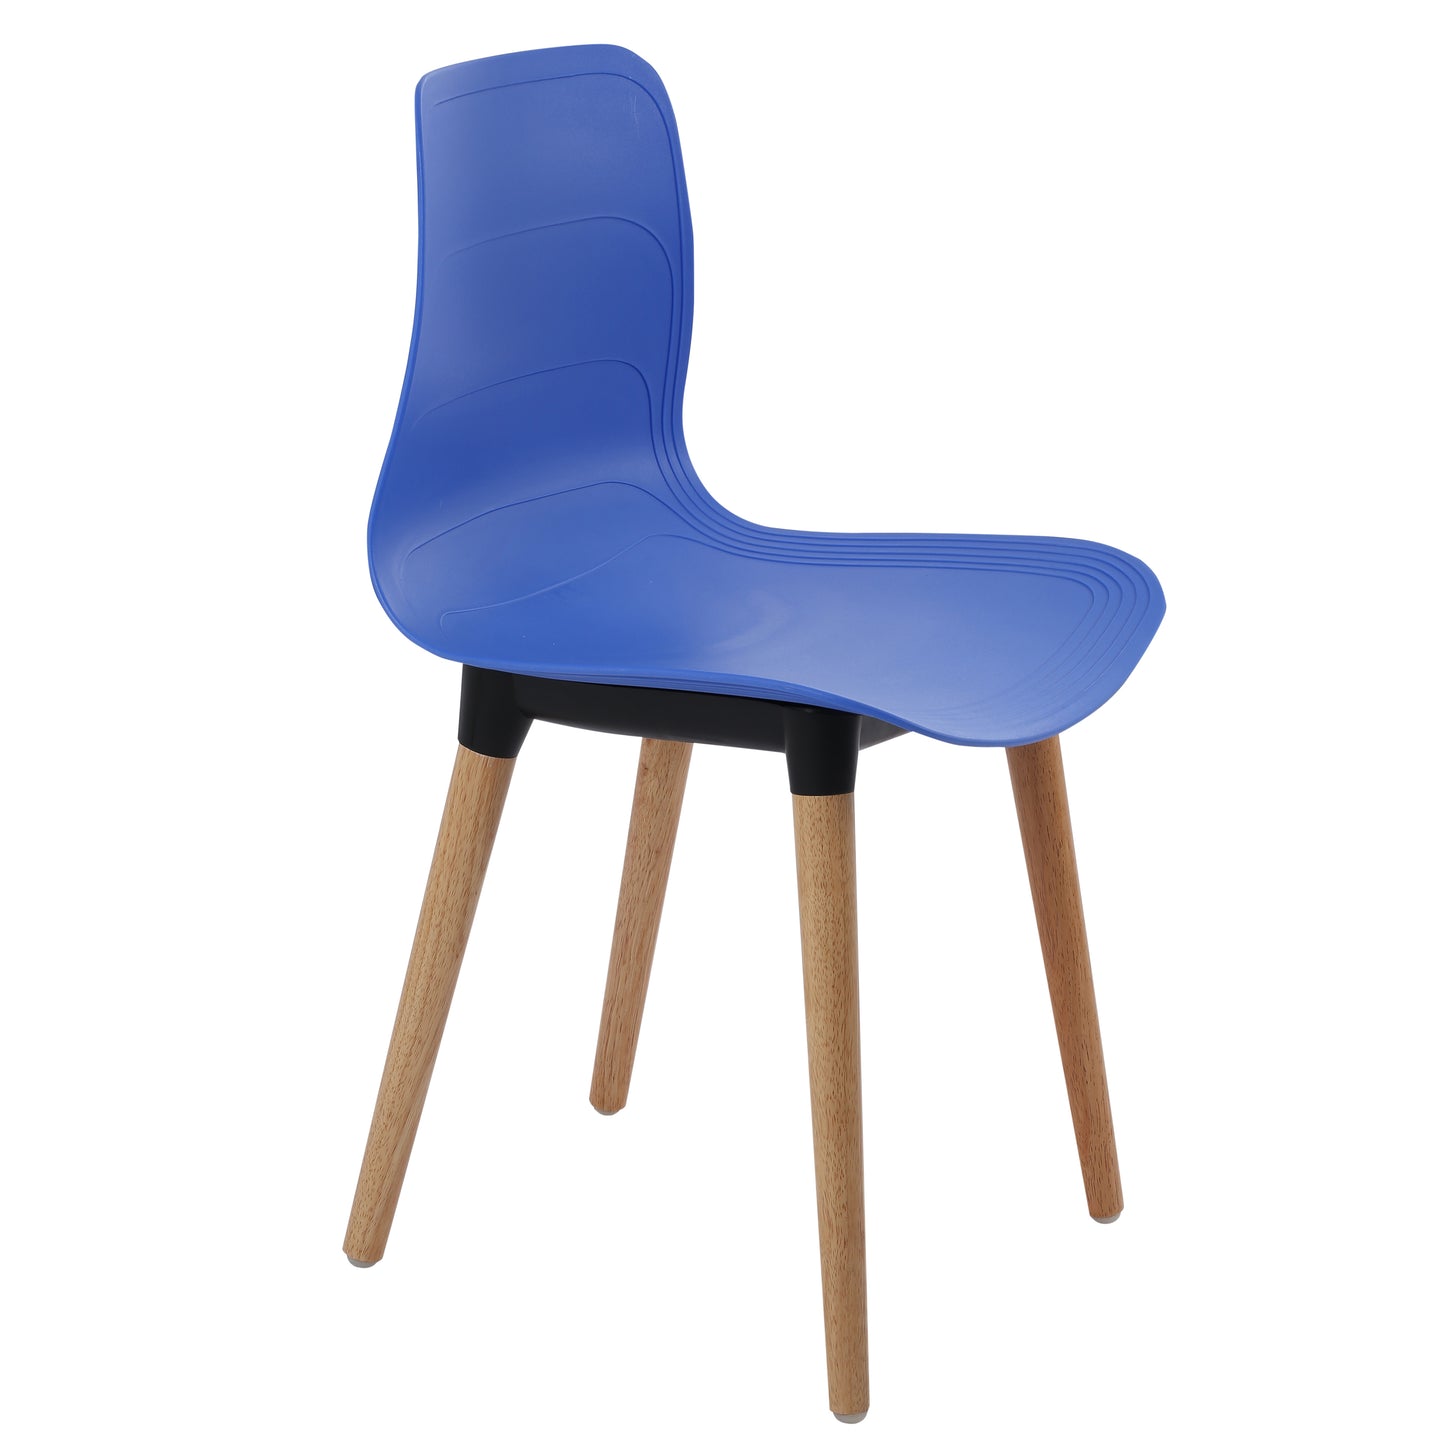 Ghế nhựa chân gỗ - HIFUWA - Hàng xuất khẩu - Màu xanh